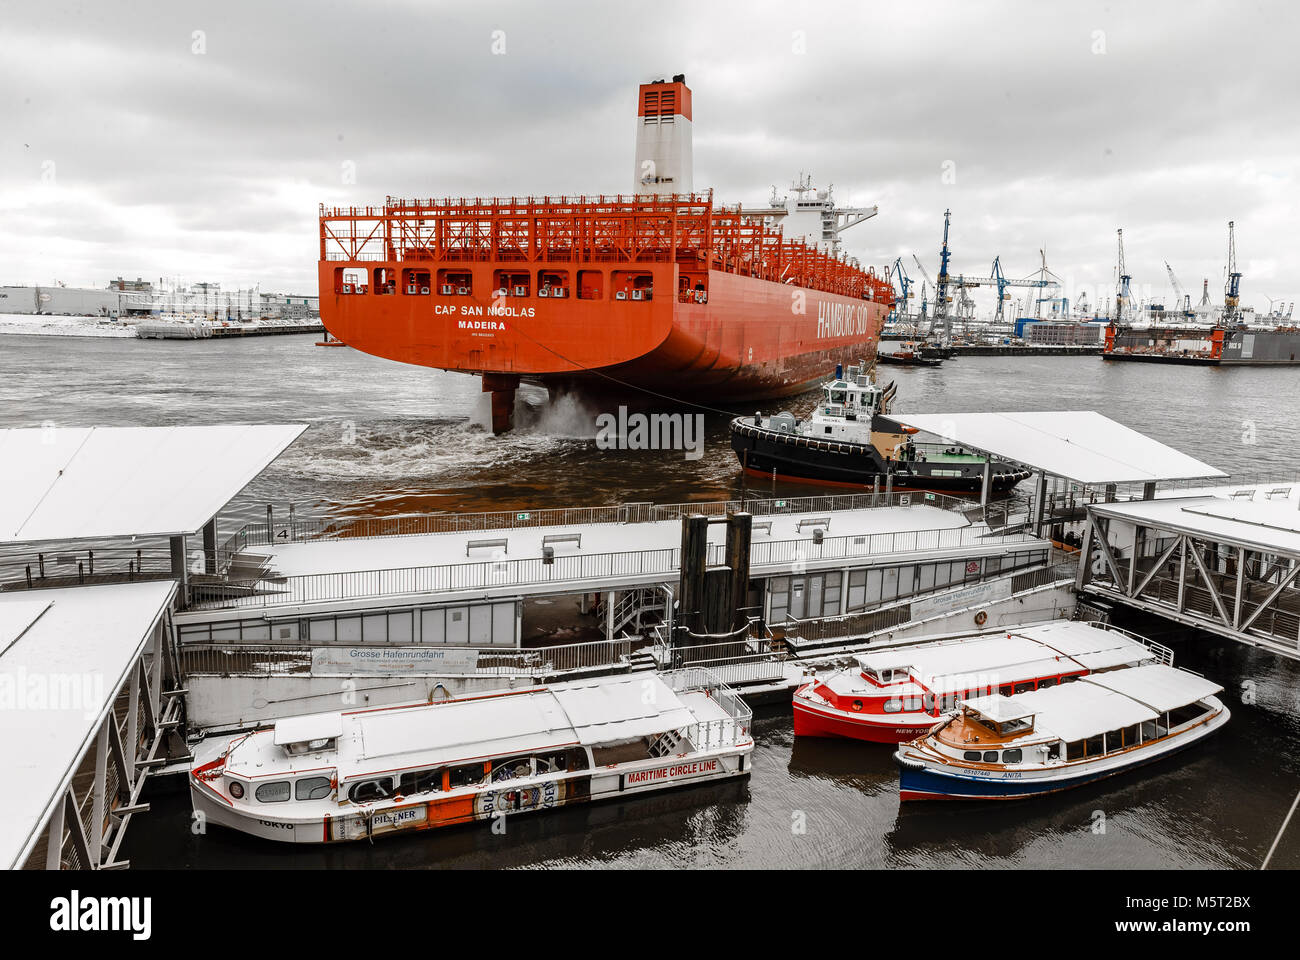 26. Februar 2018, Deutschland, Hamburg: Das Containerschiff "Cap San Nicolas" der Reederei Hamburg Süd Docks gegenüber den Landungsbrücken auf der Werft von Blohm und Voss. Foto: Markus Scholz/dpa Stockfoto